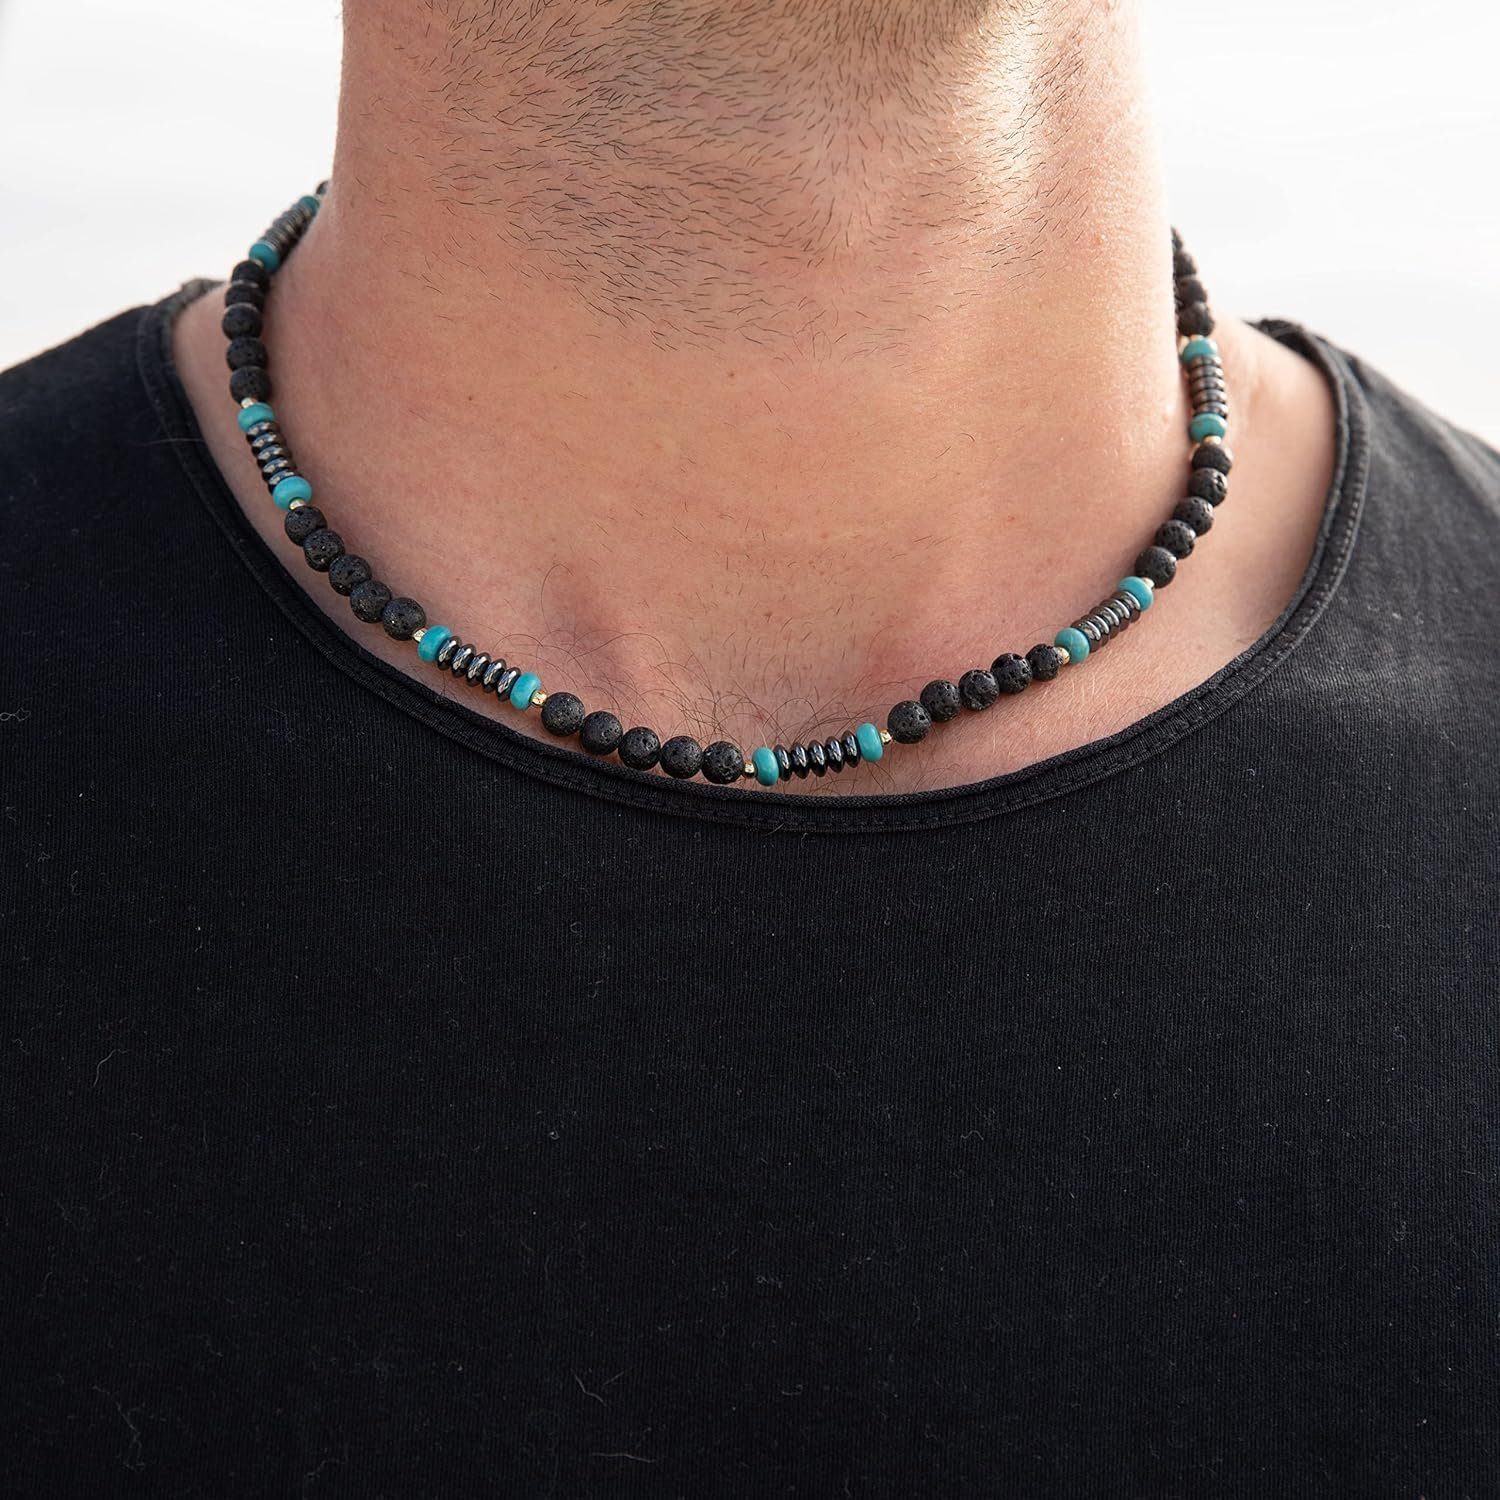 Made by Nami Perlenkette Halskette Herren Strand mit Kokosnussperlen, Schmuck Surfer Wasserfest